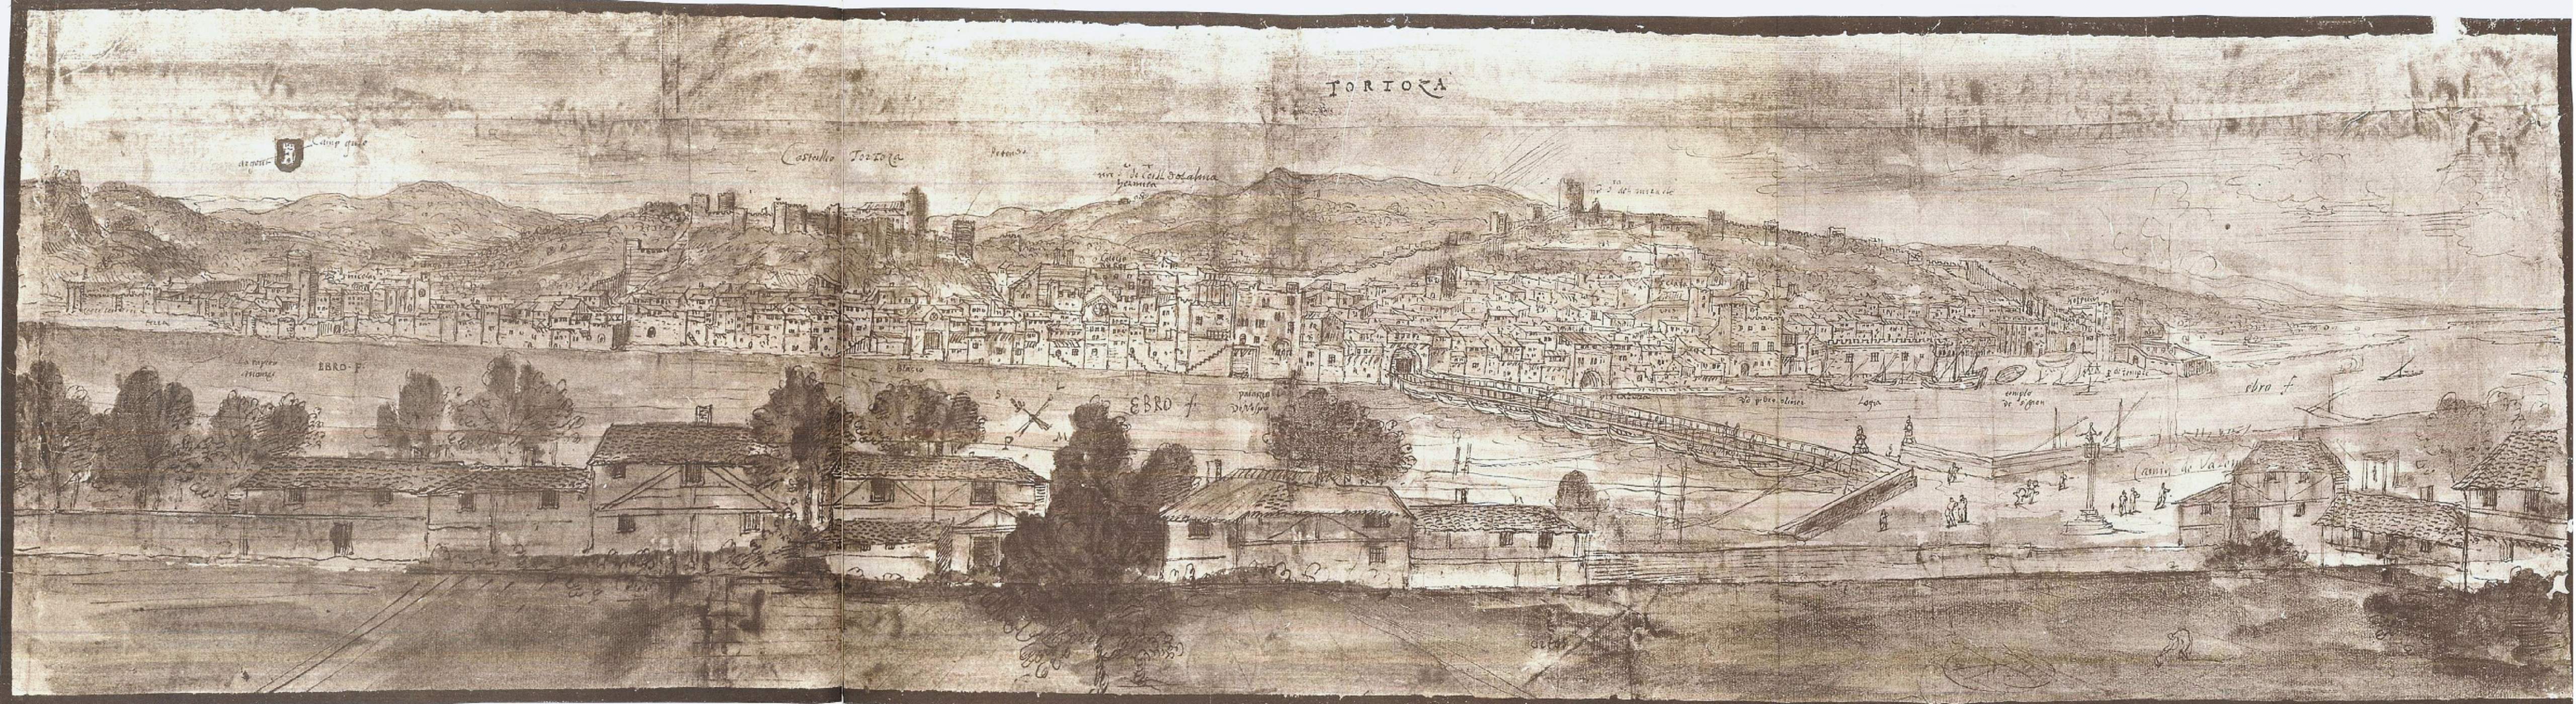 Grabado de Tortosa (finales del siglo XVI). Fuente Ayuntamiento de Tortosa